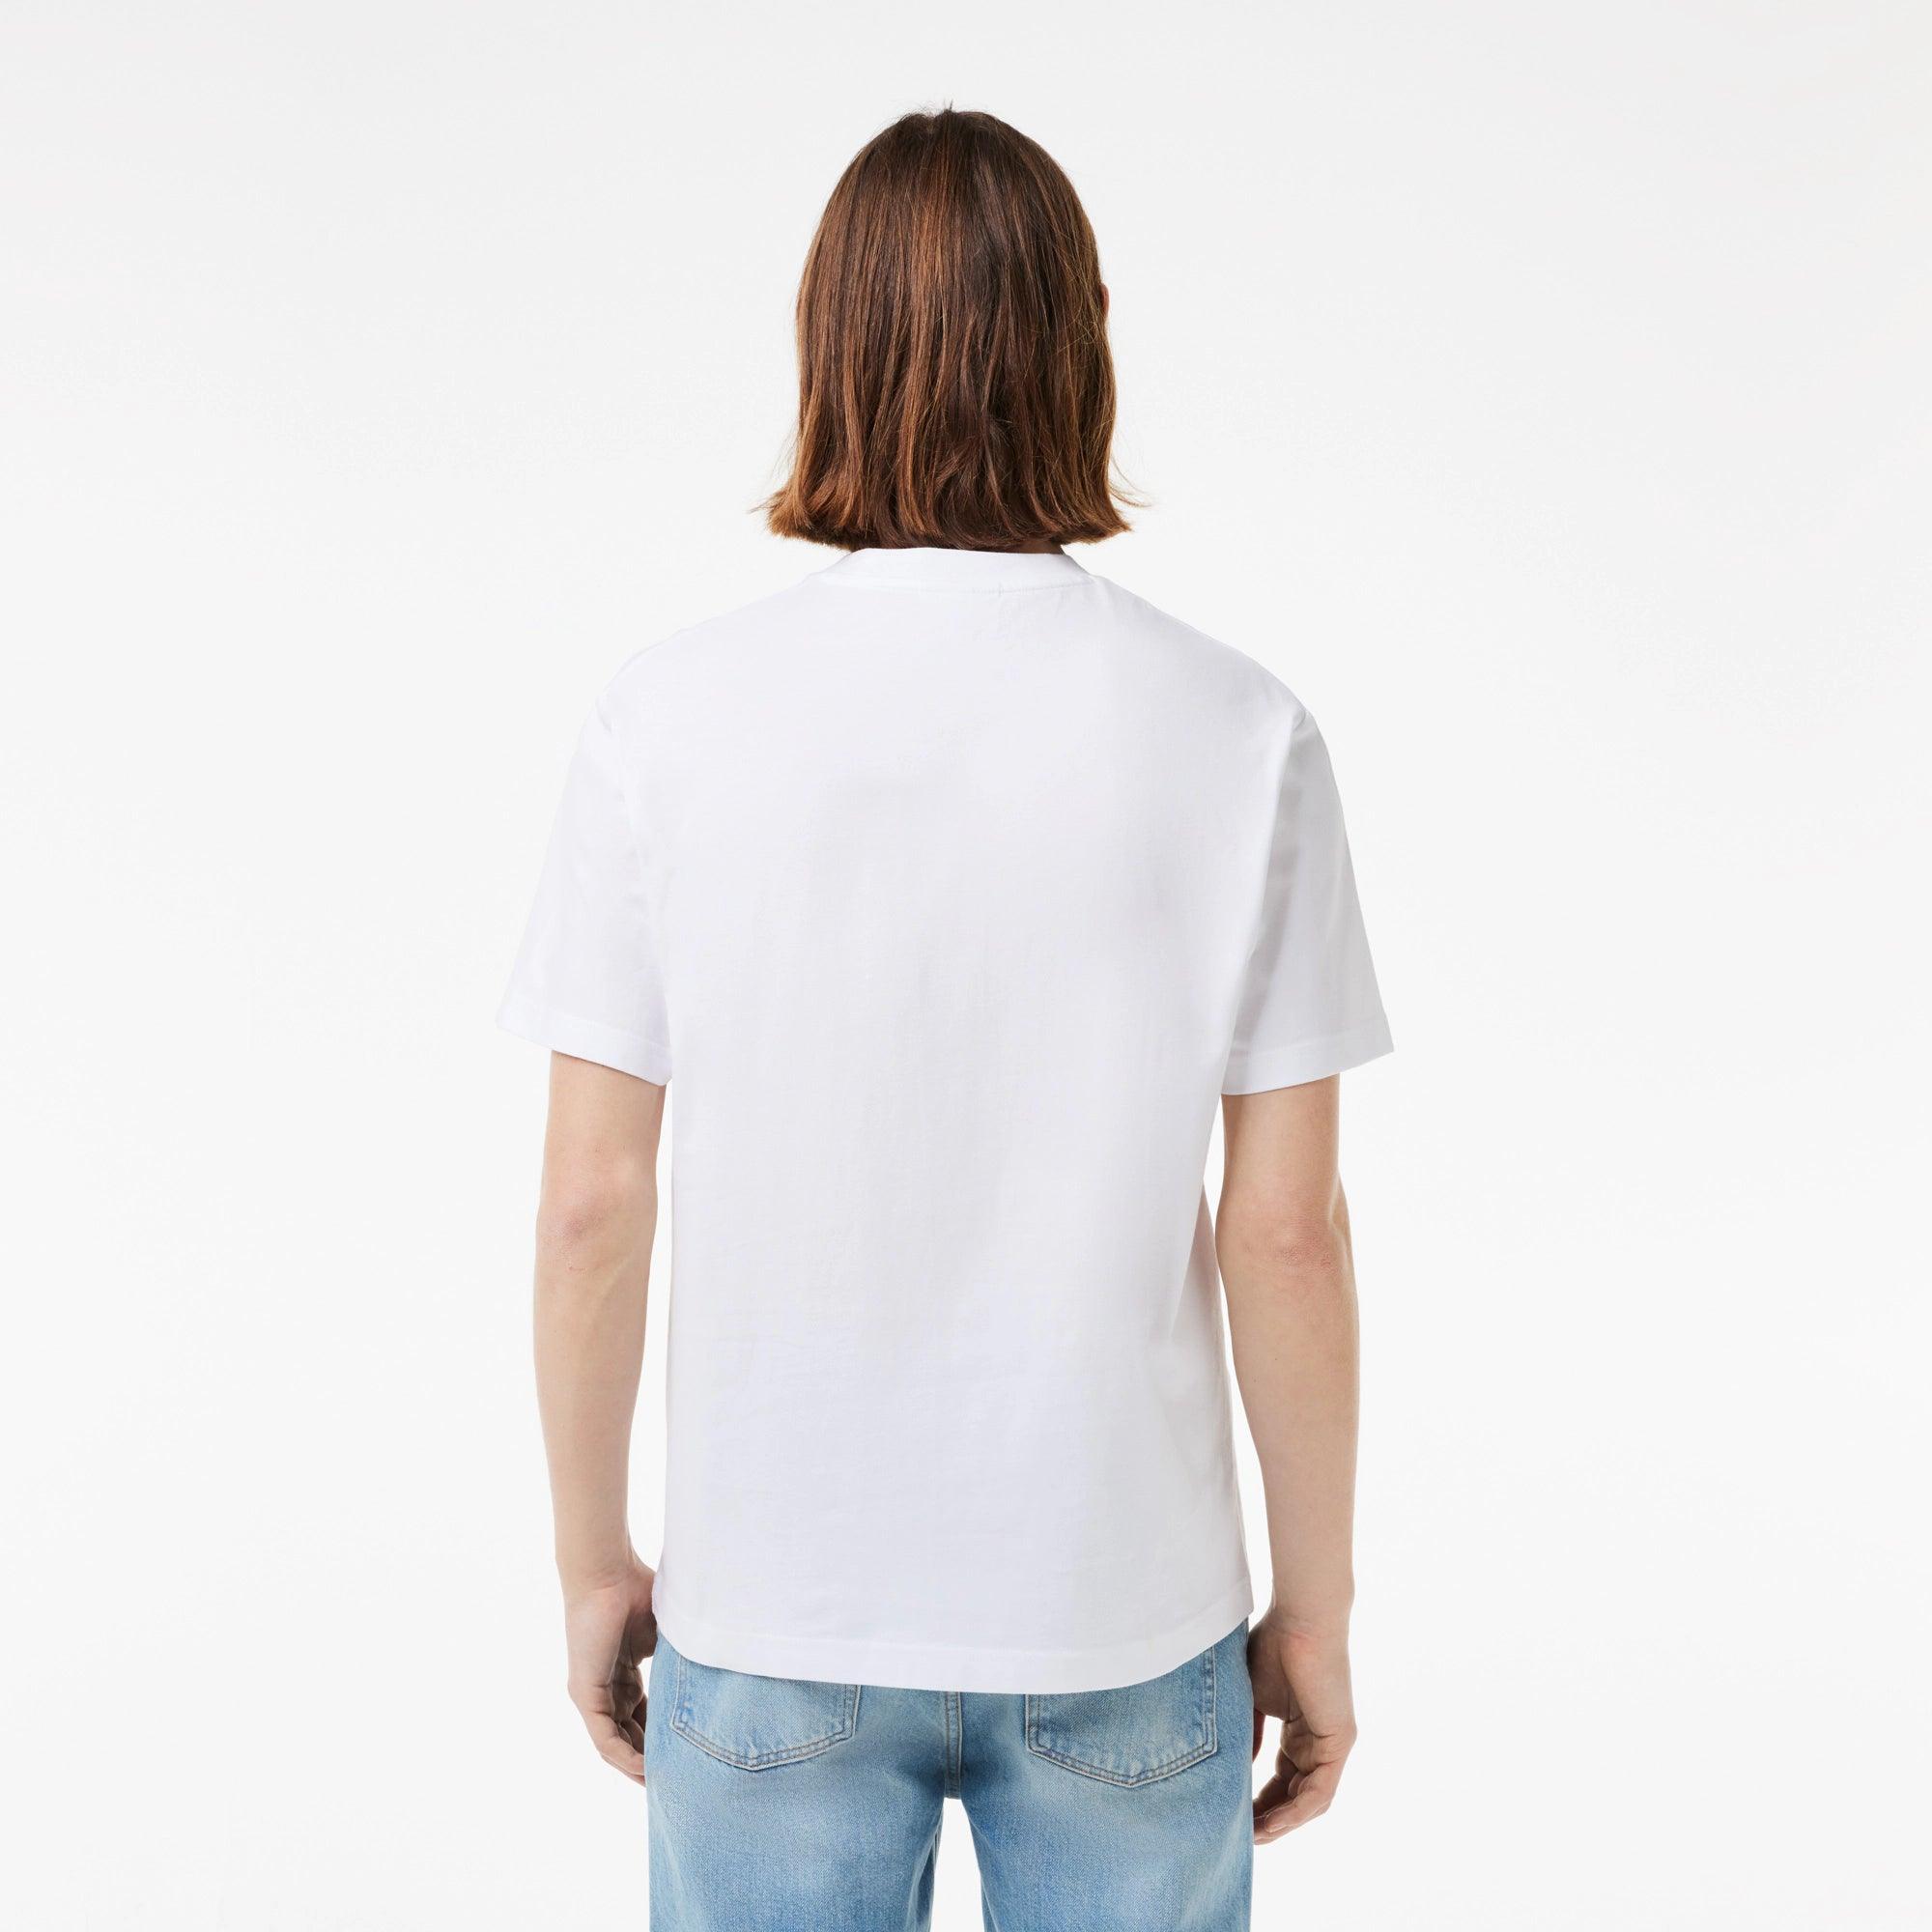 Camiseta Lacoste de Corte Clásico de Punto de Algodón Blanca - ECRU